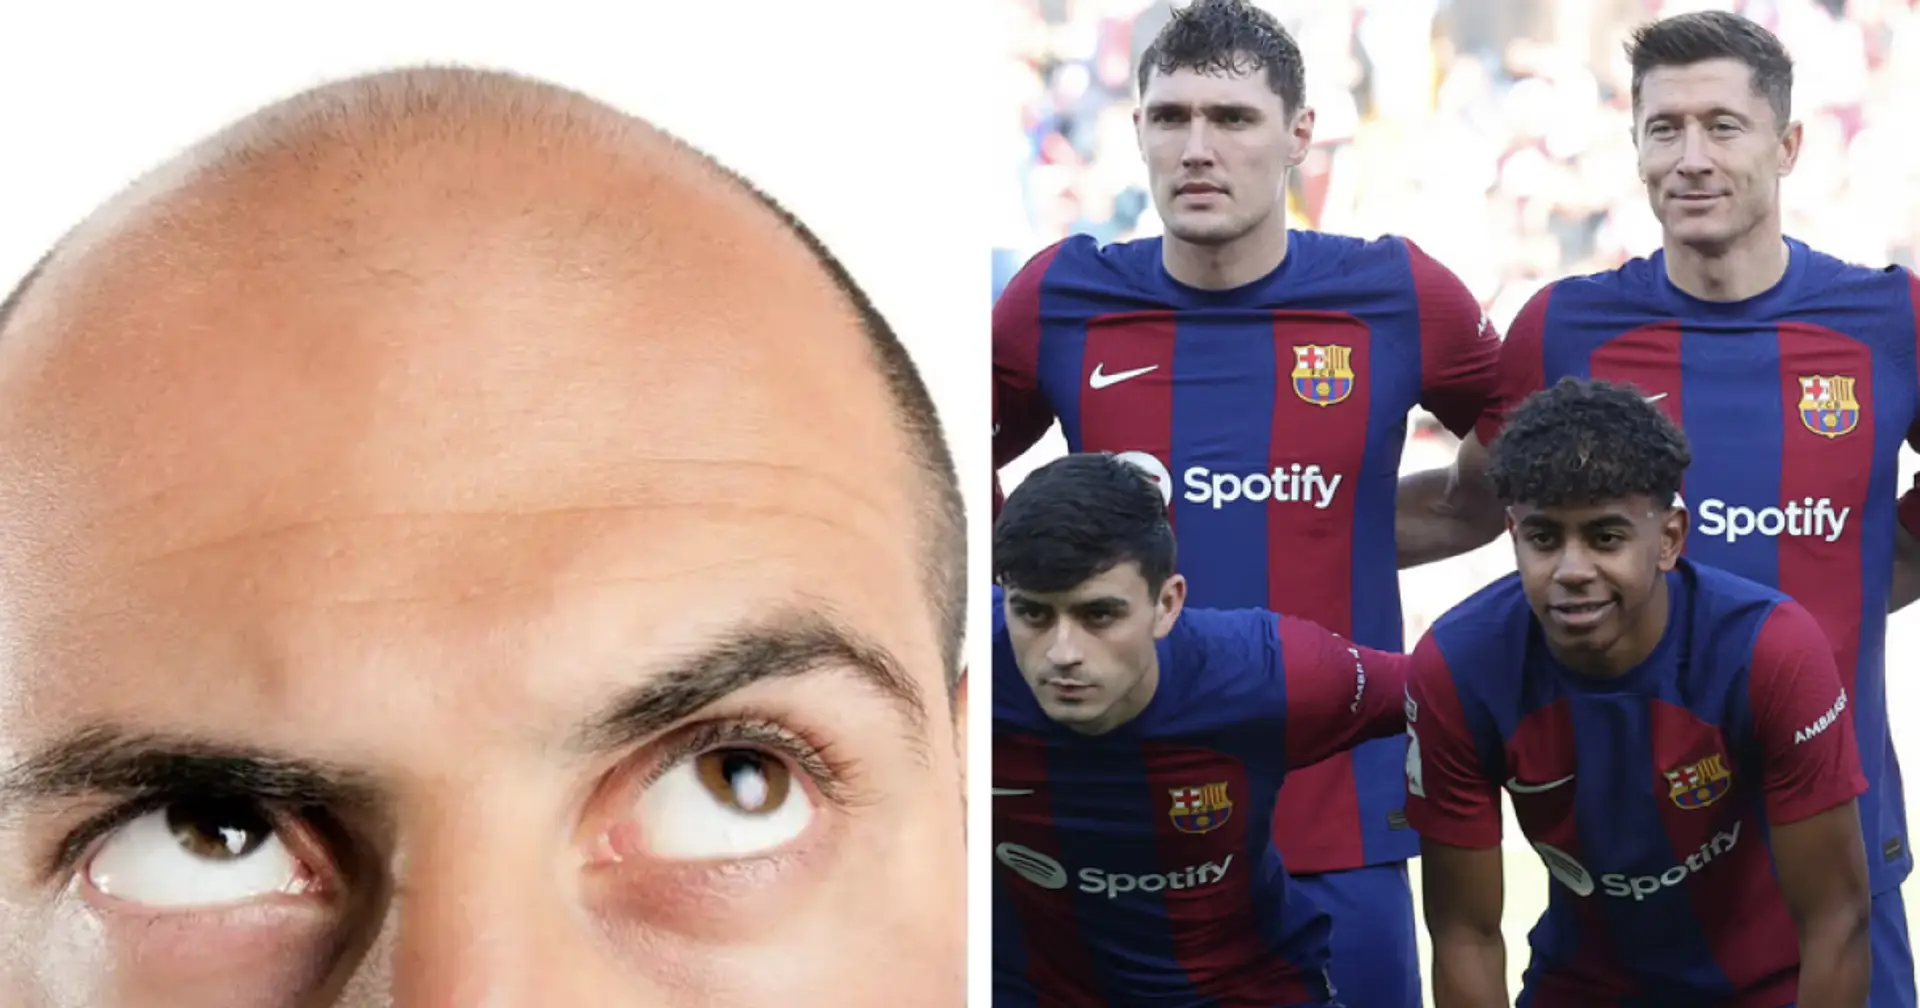 Un joueur du Barça qui veut devenir chauve fait une prédiction audacieuse sur son avenir